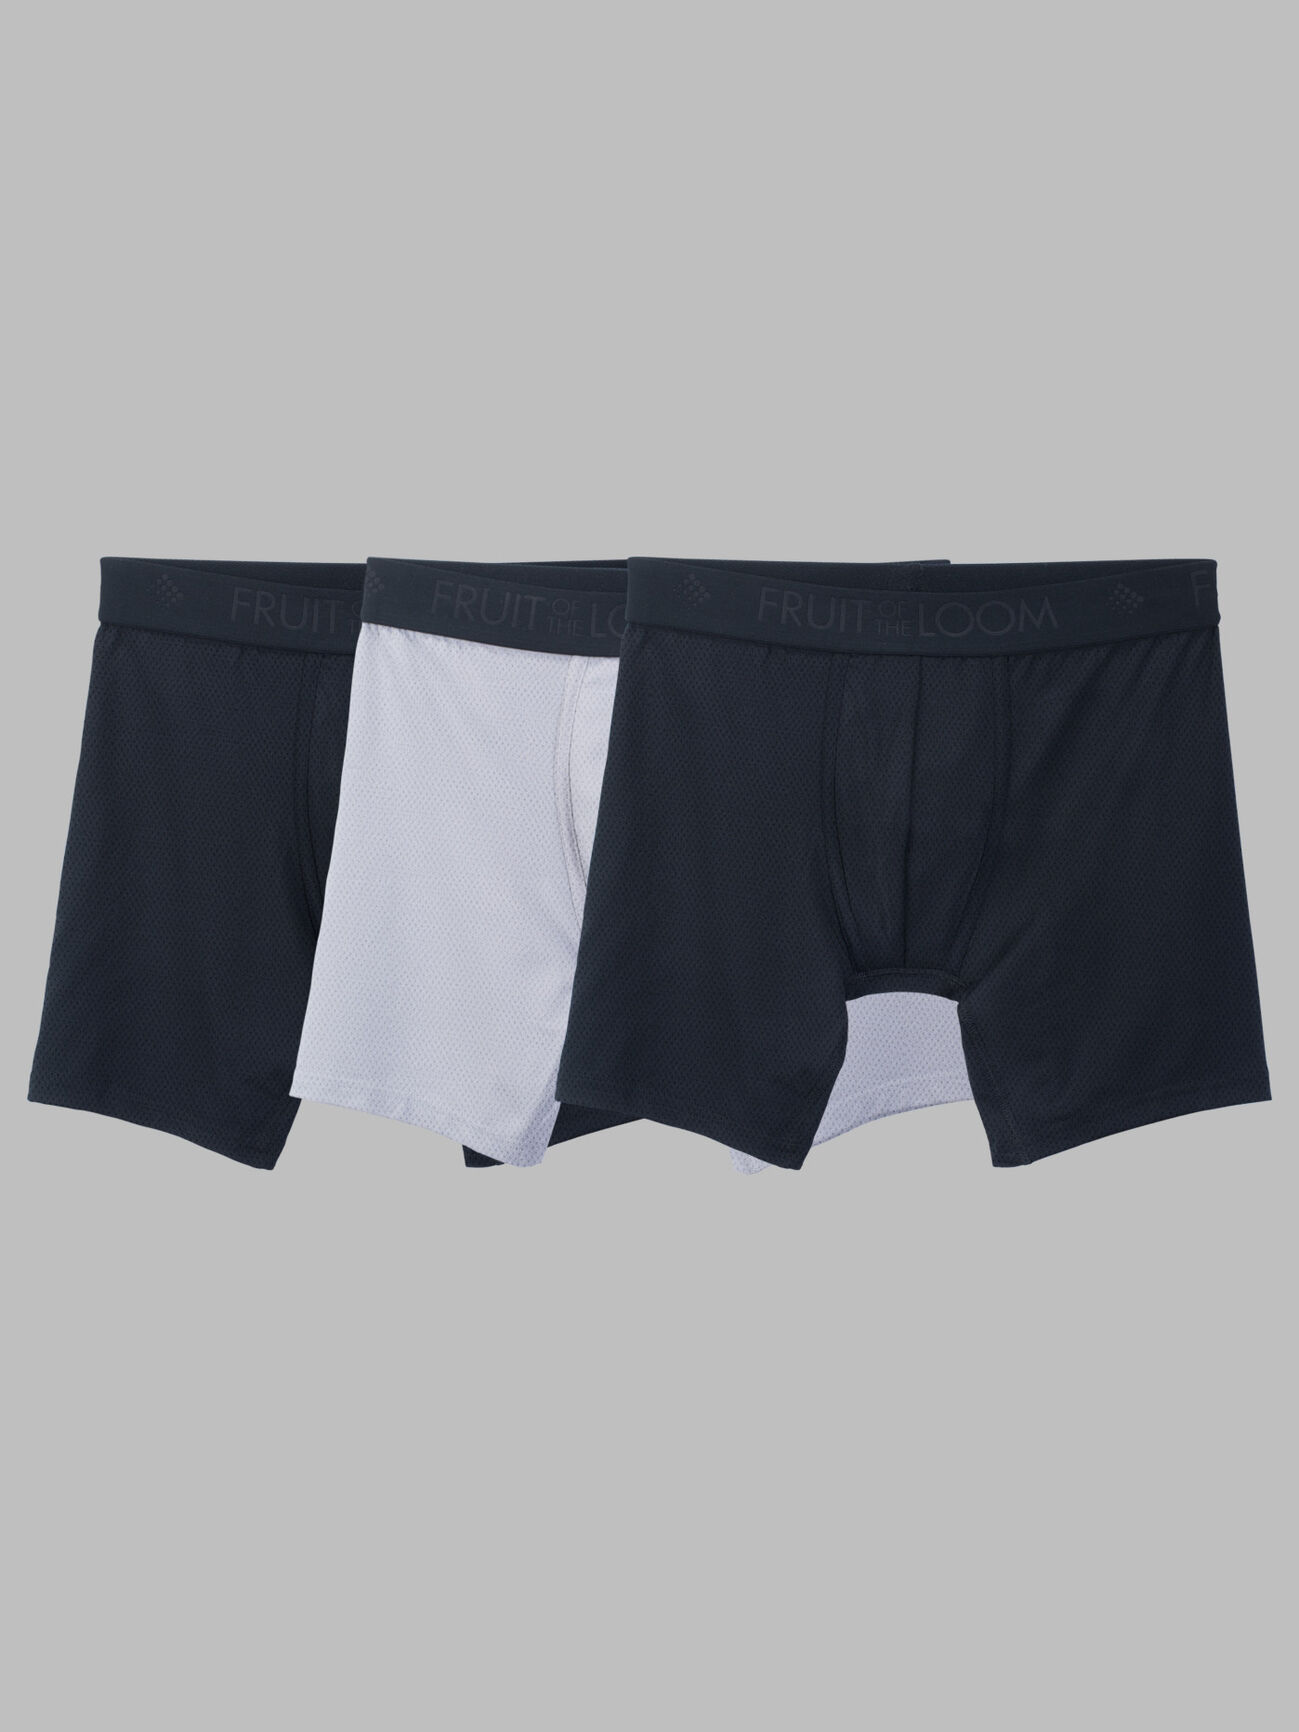 Hanes Originals Boys' SuperSoft Boxer Brief Underwear, Black, 5-Pack